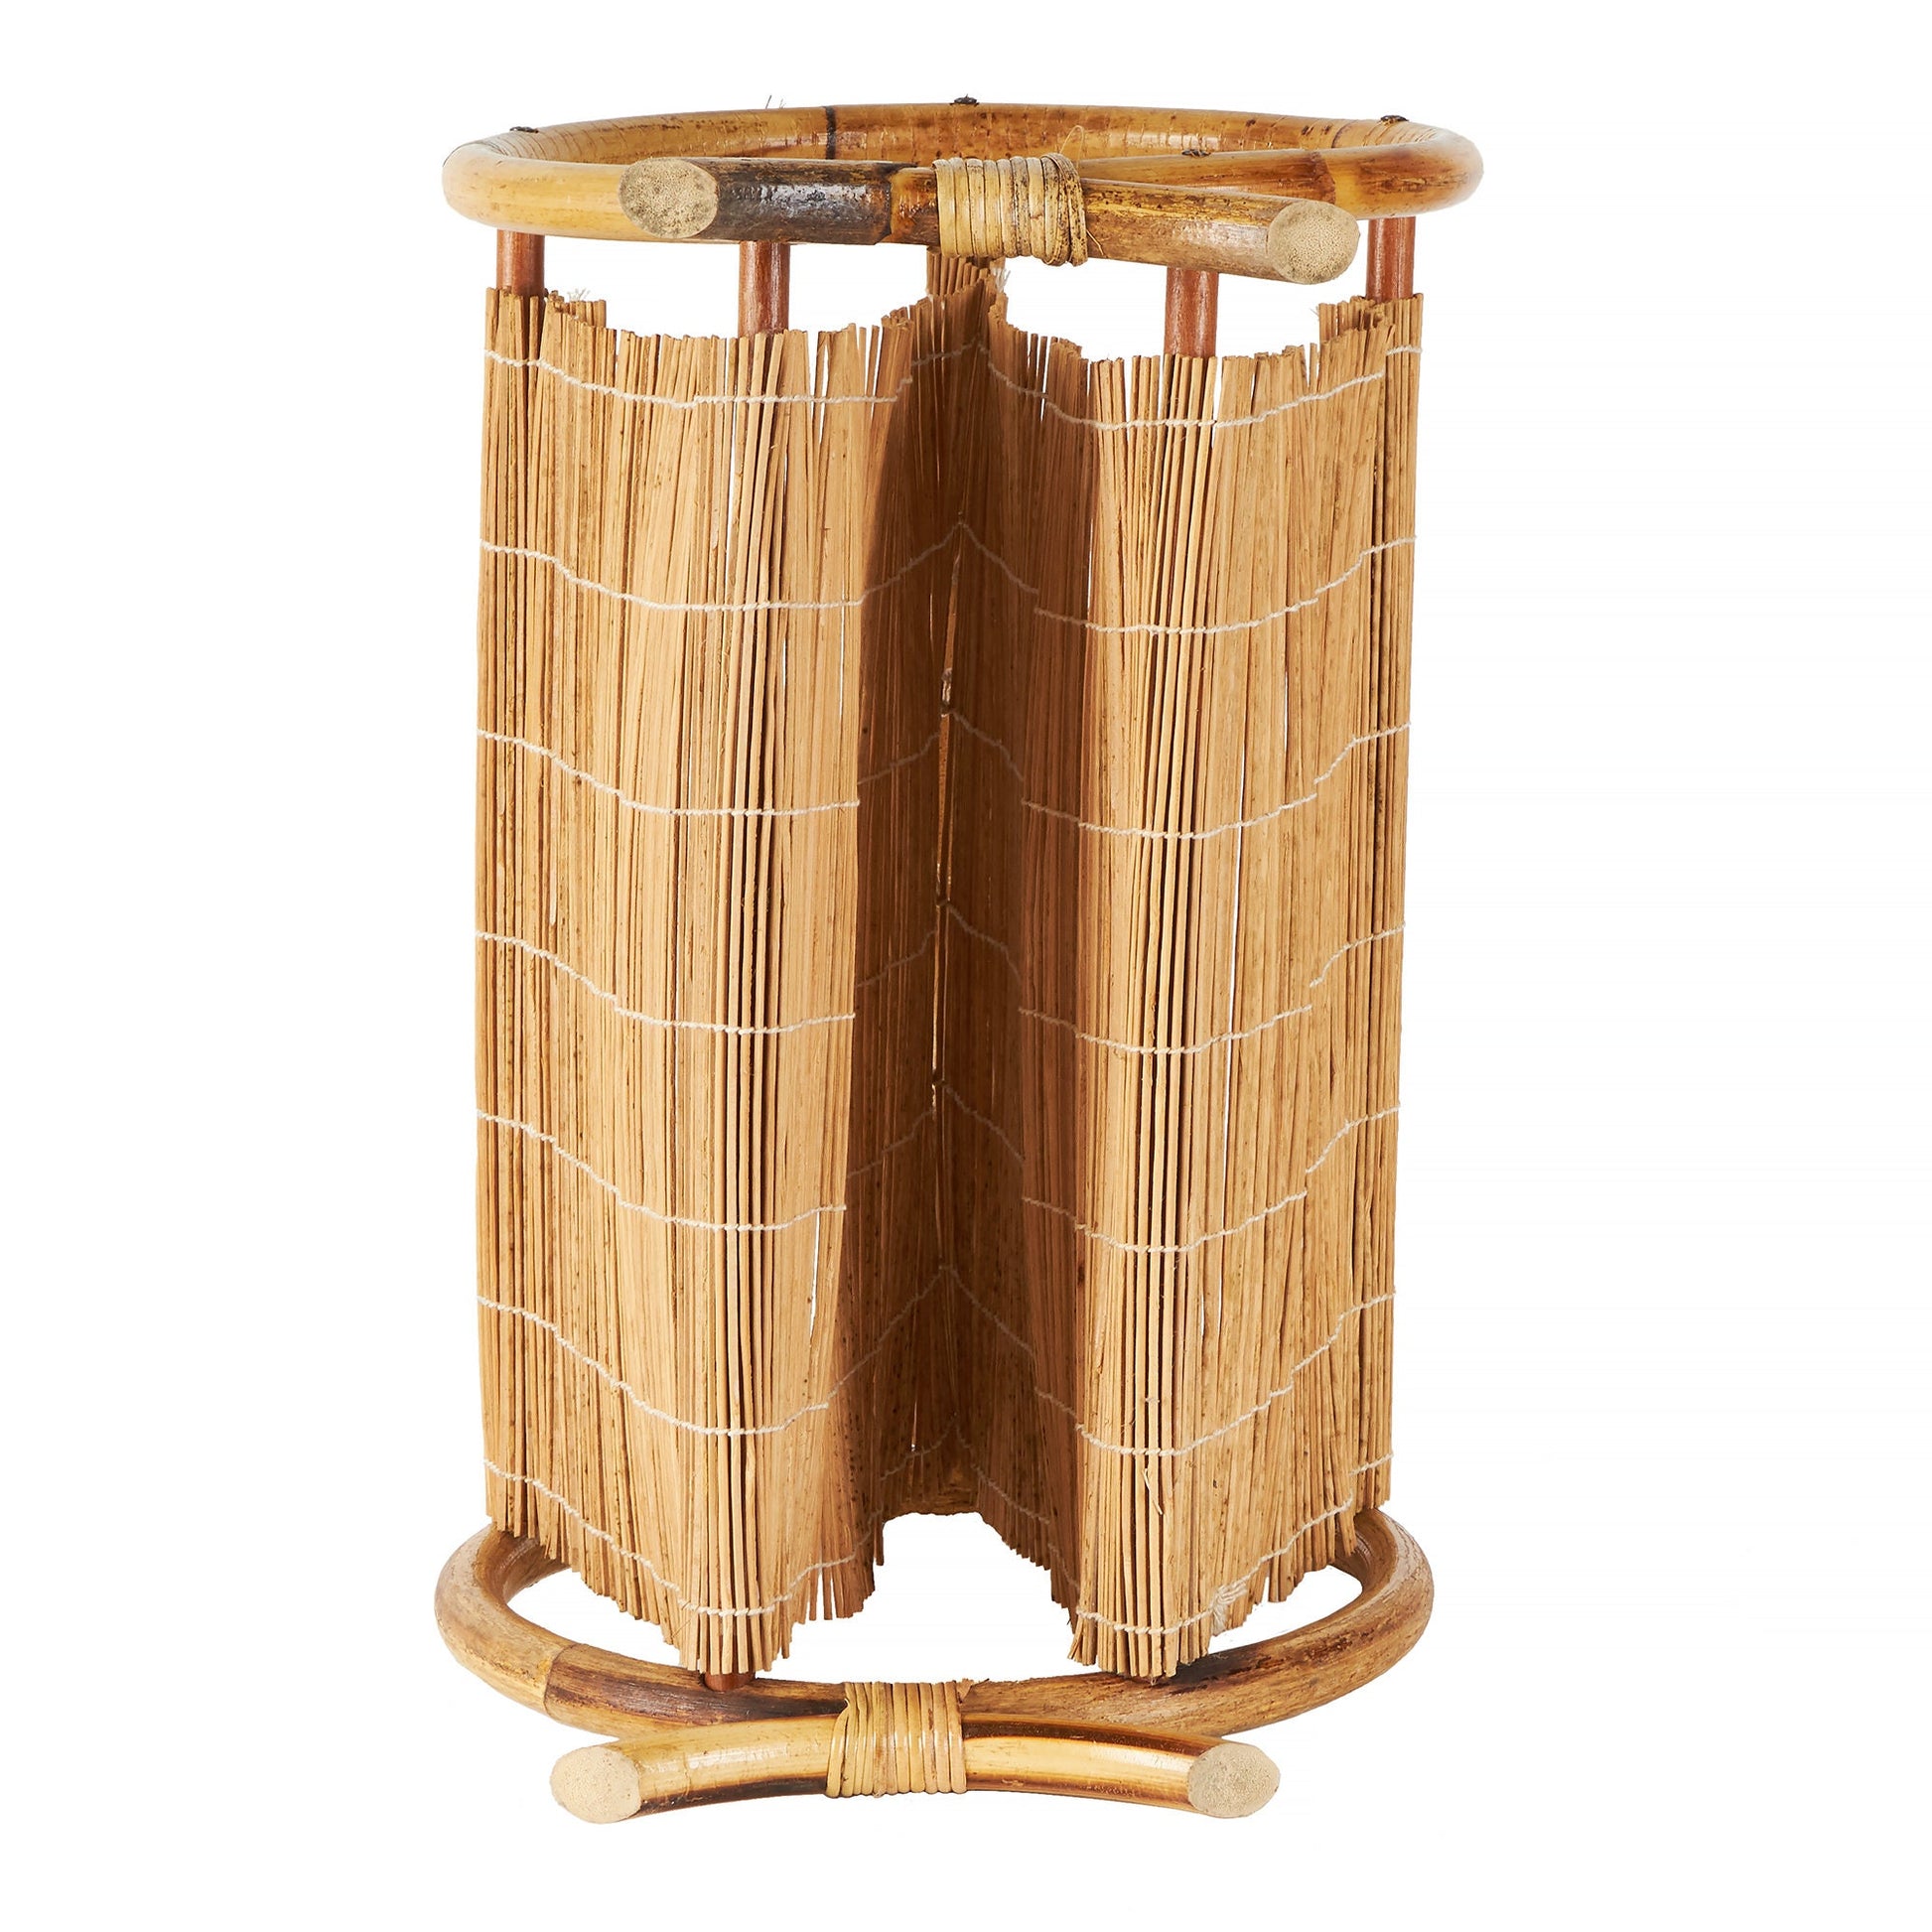 Midcentury Modern Round Bamboo Magazine Rack